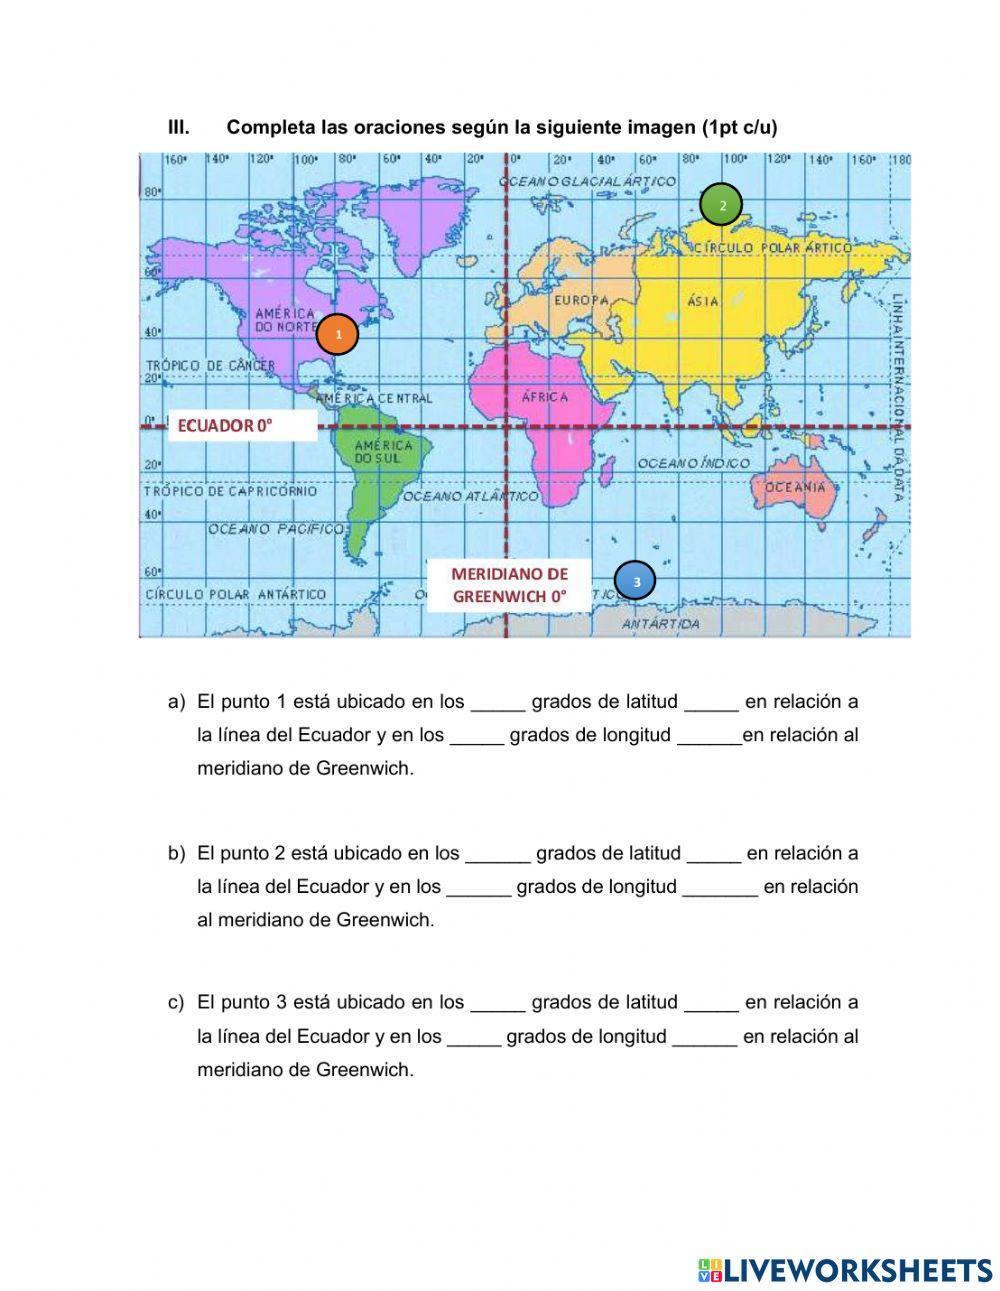 Prueba de Historia, geografía y Cs sociales worksheet